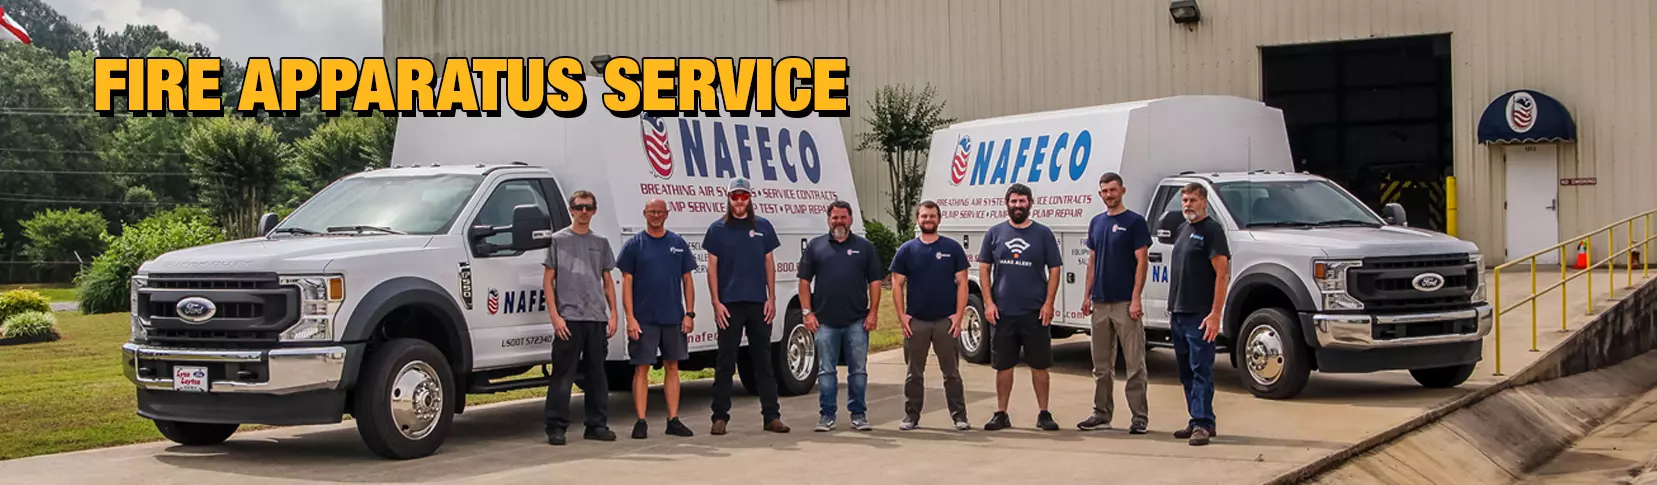 NAFECO Service Department